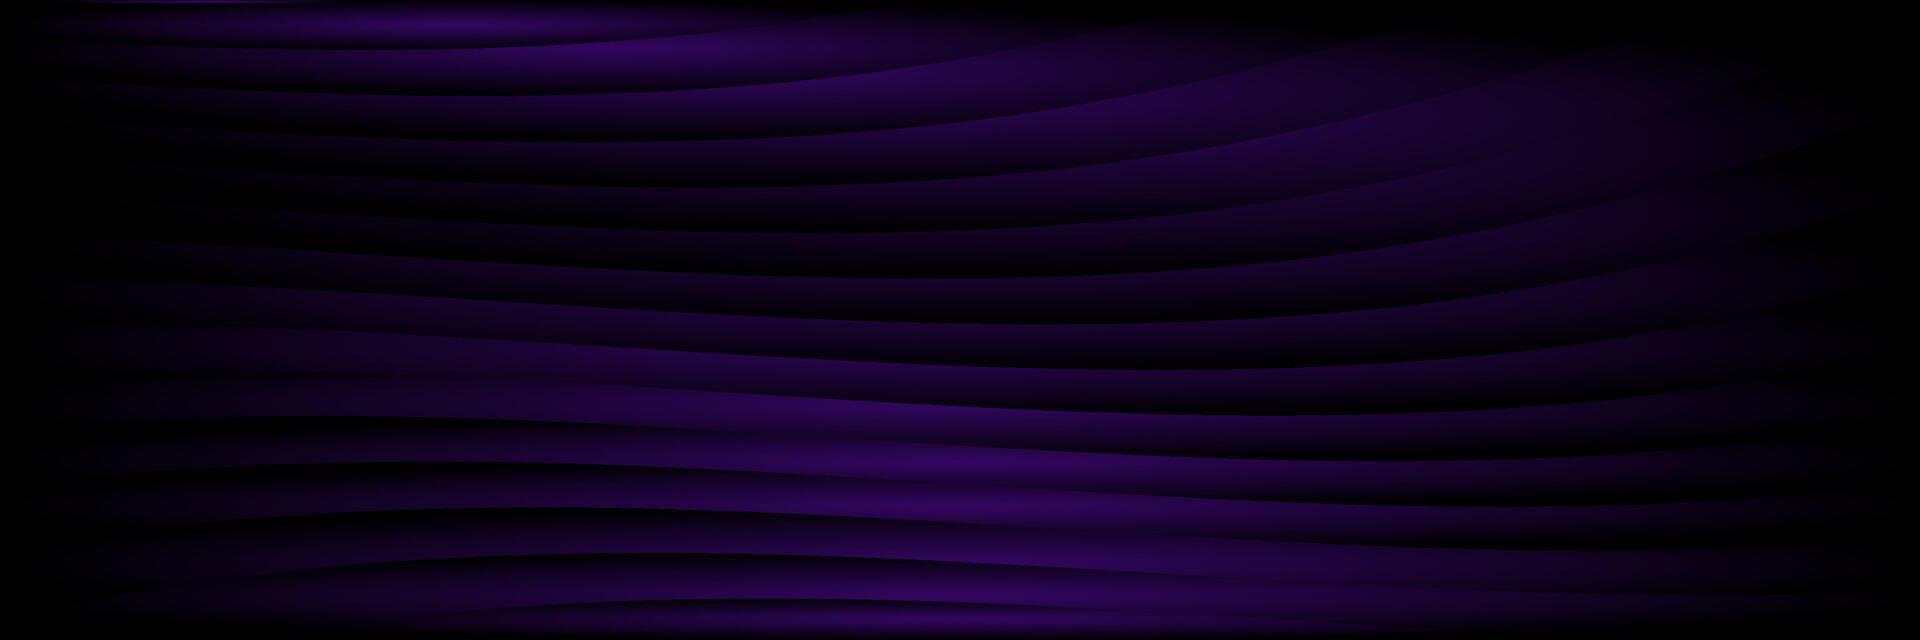 abstrakt mörk lila elegant företags- bakgrund vektor